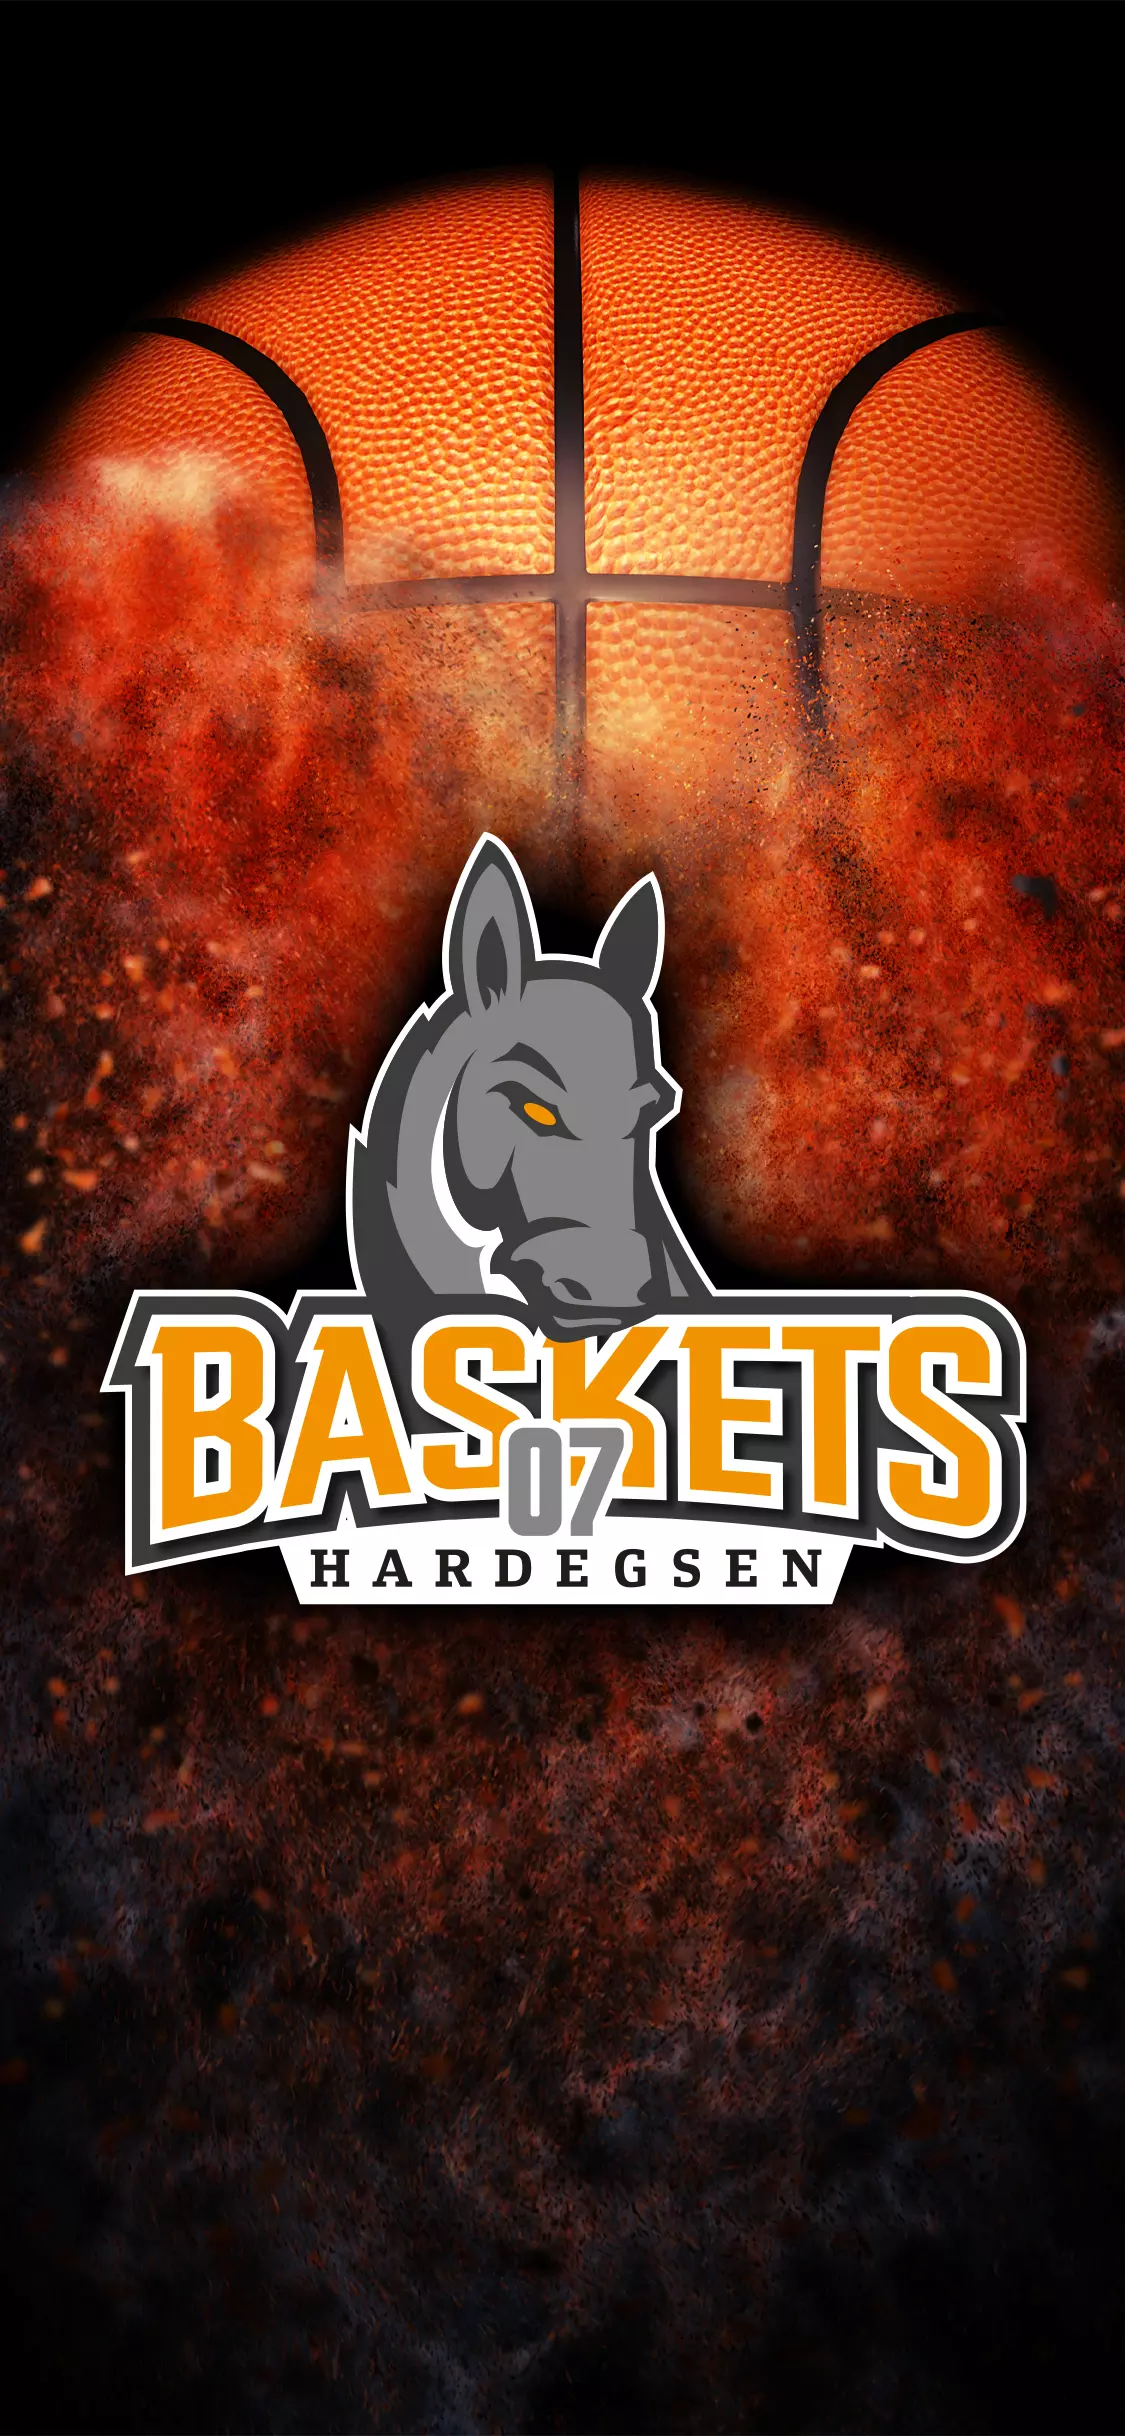 Web Background Baskets iphonex logo